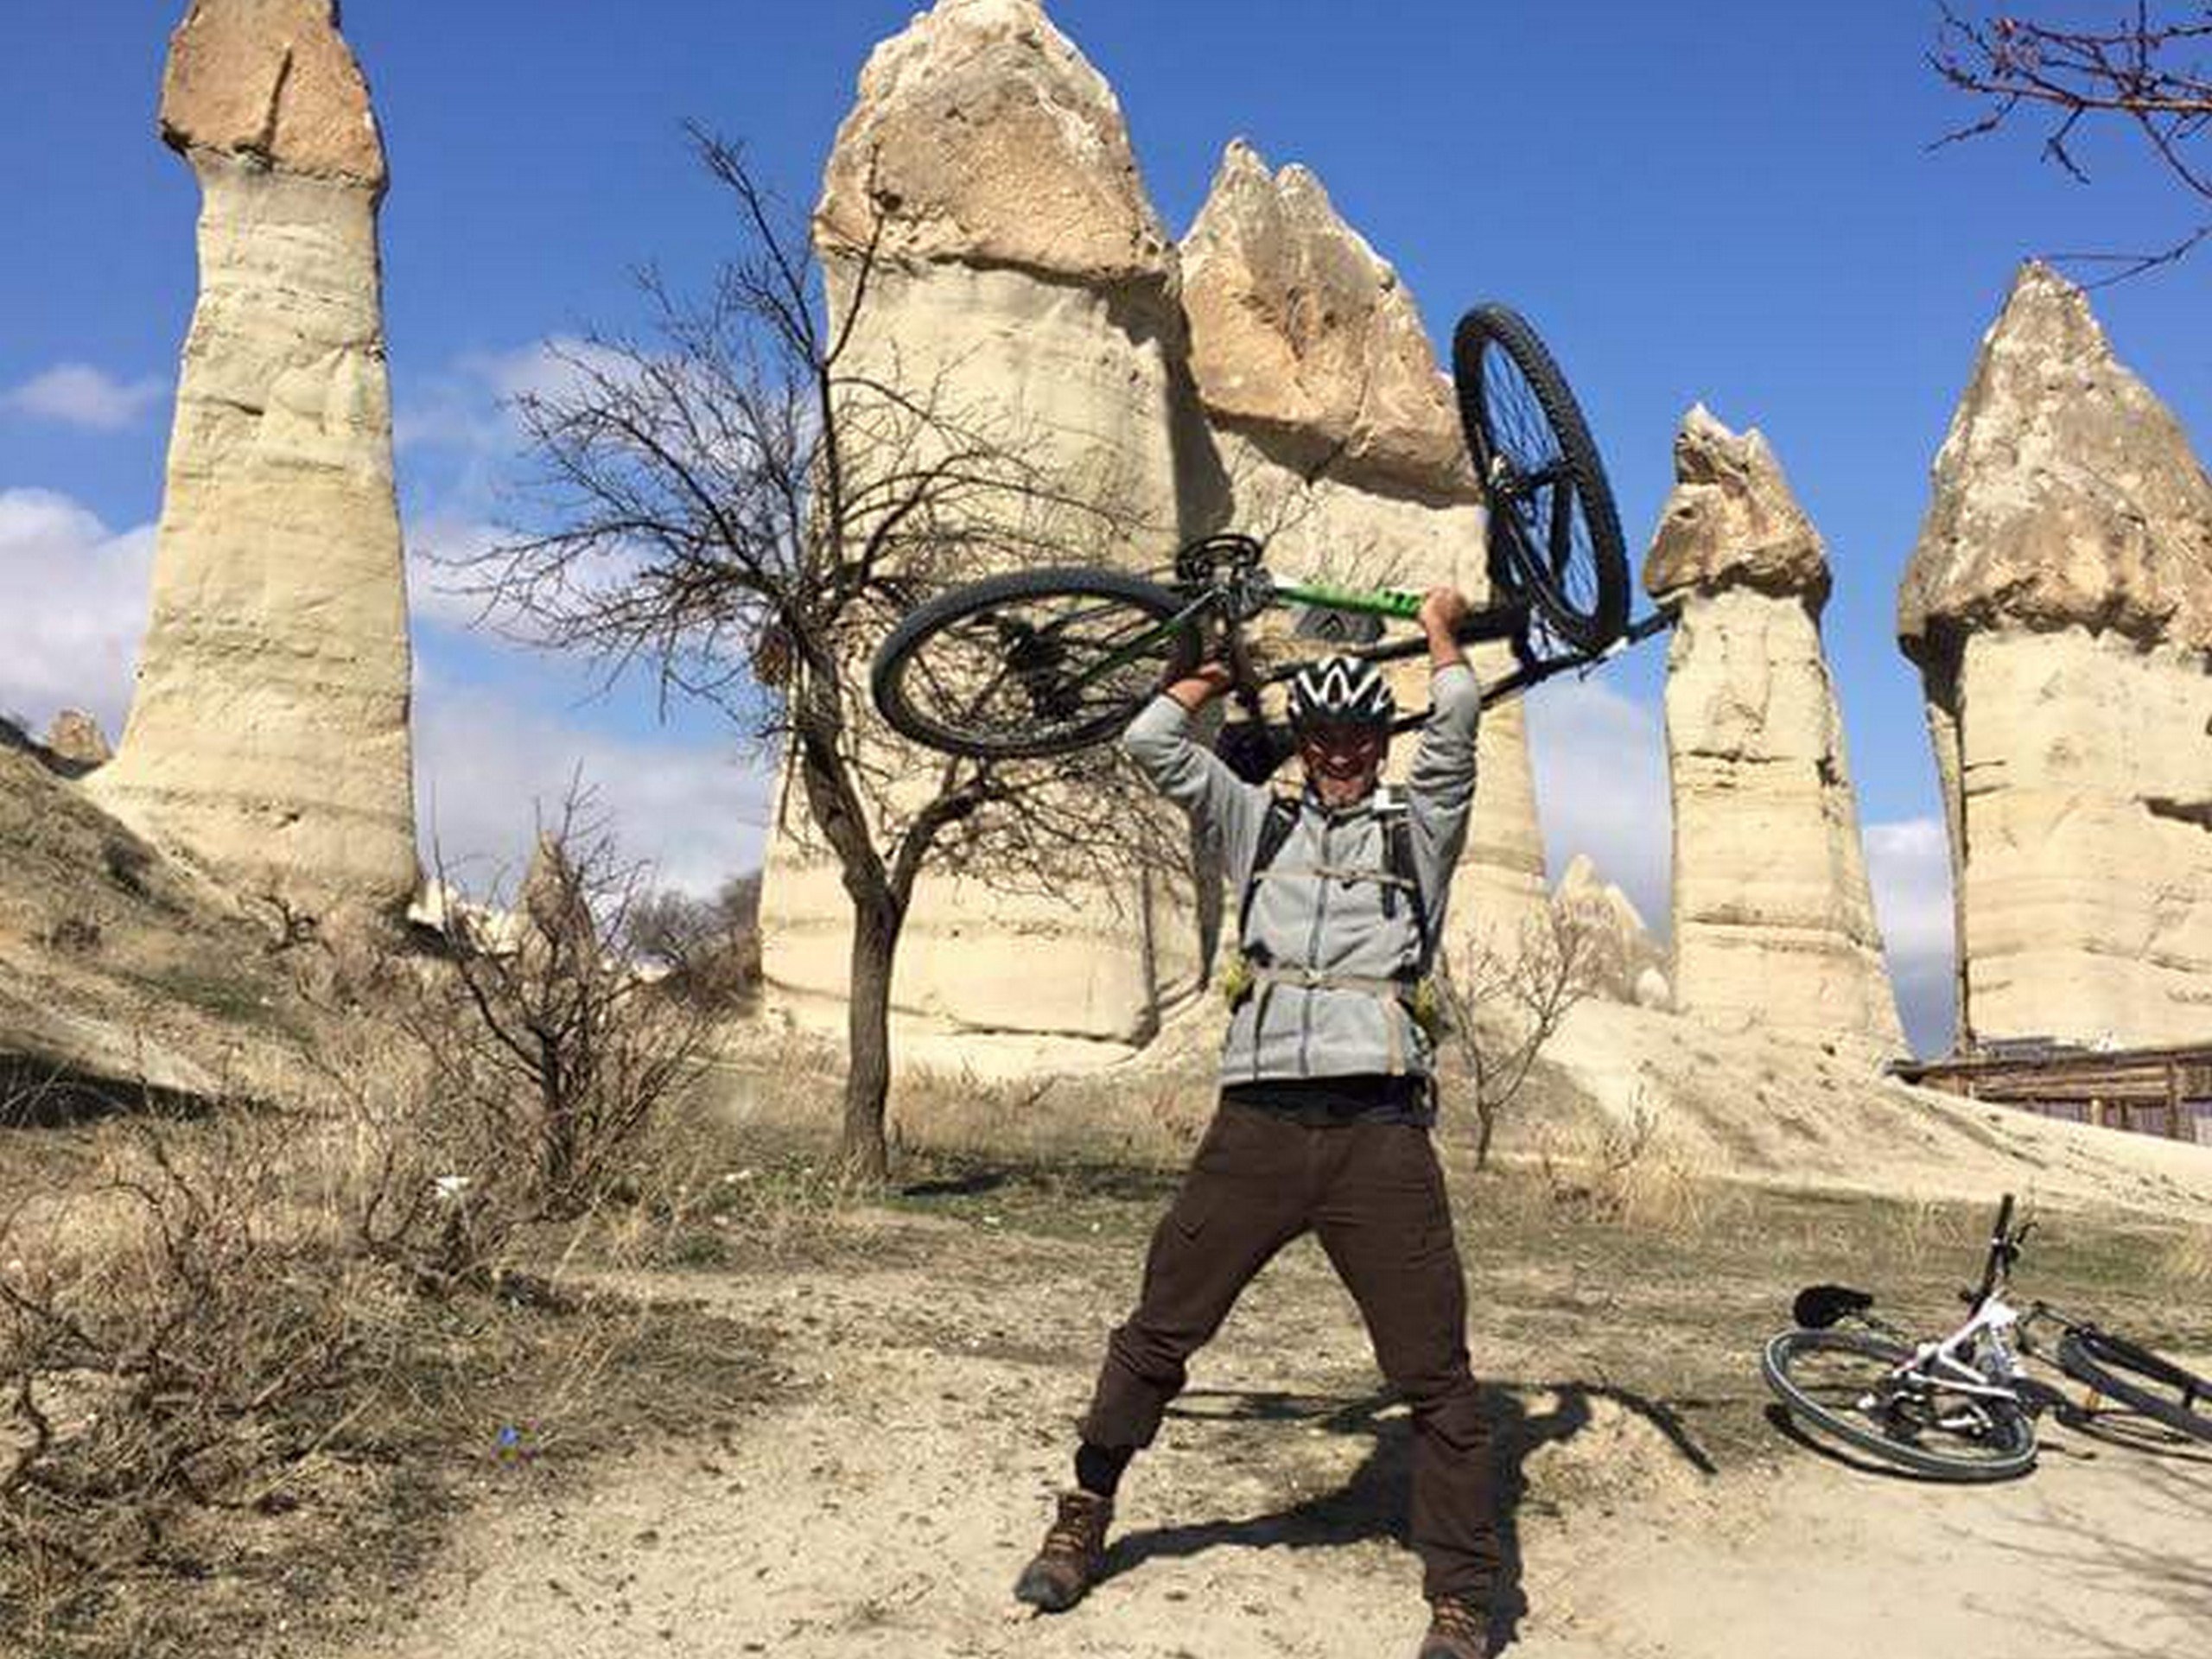 Biker posing with his bike in Cappadocia